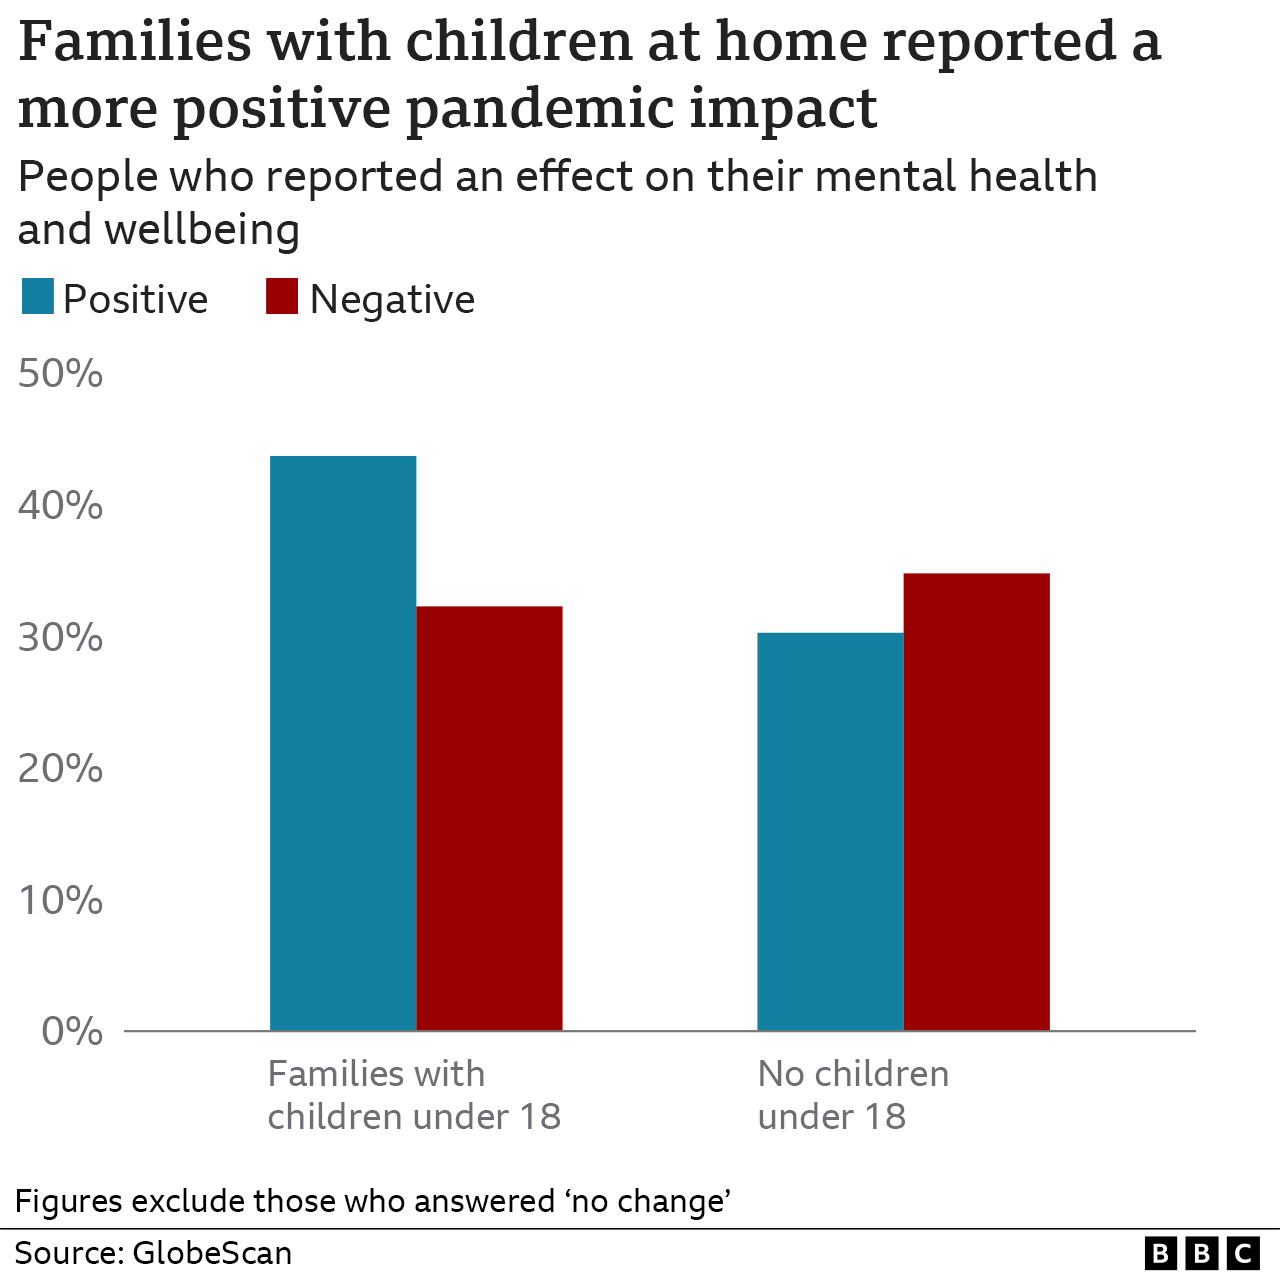 Диаграмма: Семьи с детьми дома сообщили о более положительном влиянии пандемии на благополучие